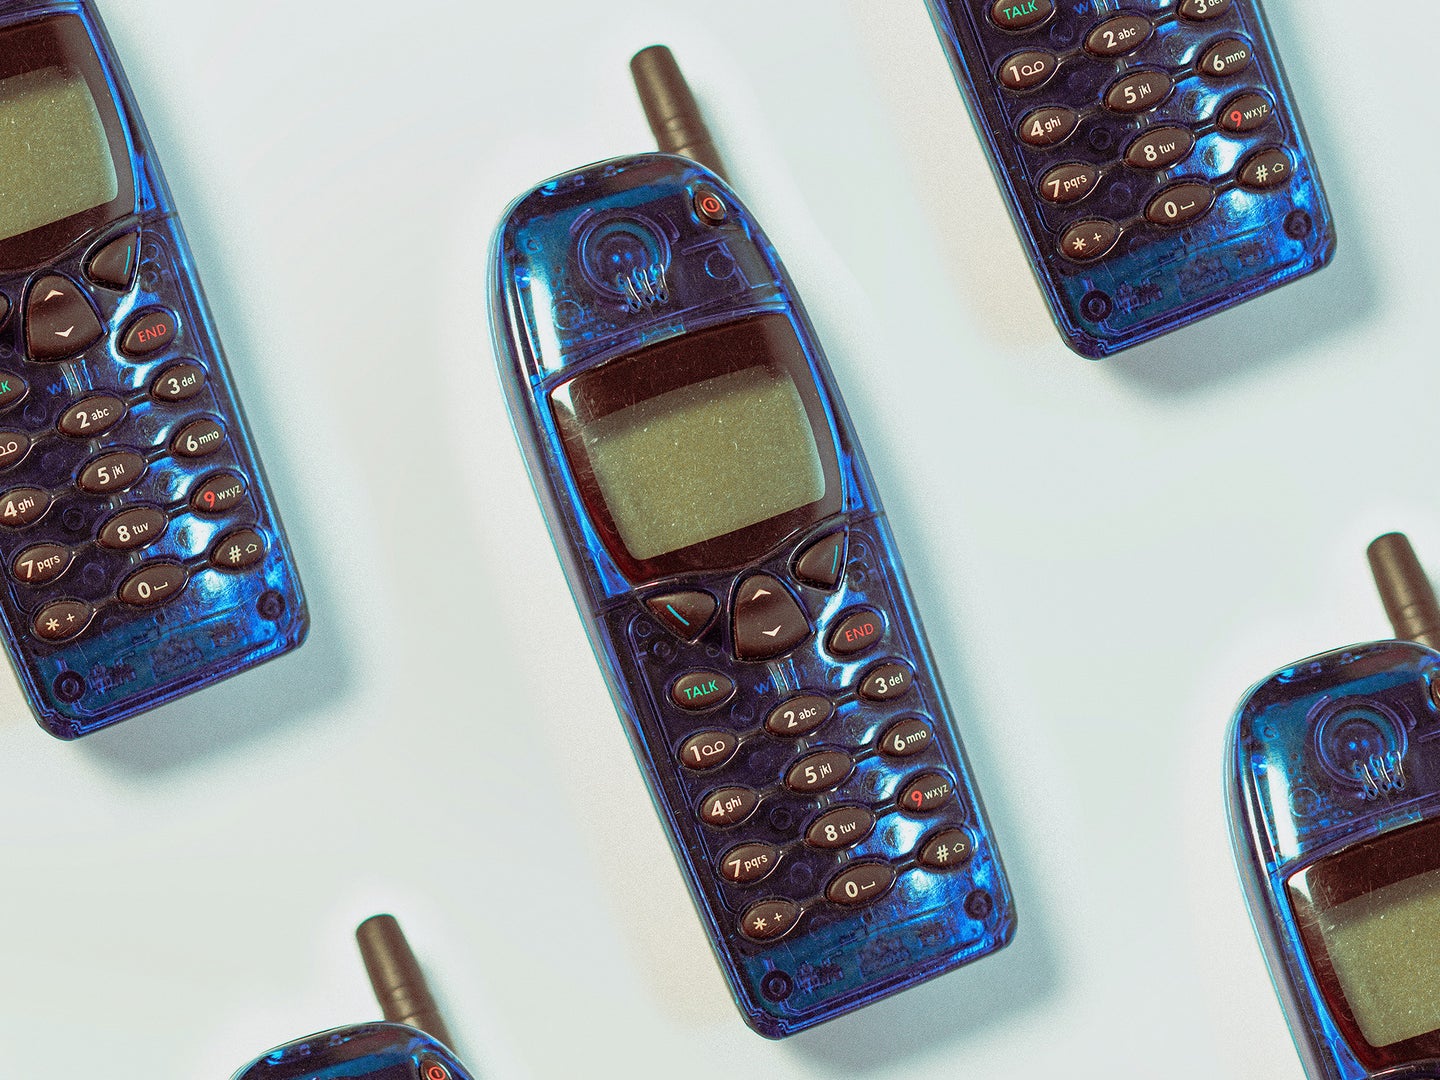 Old nokia phones